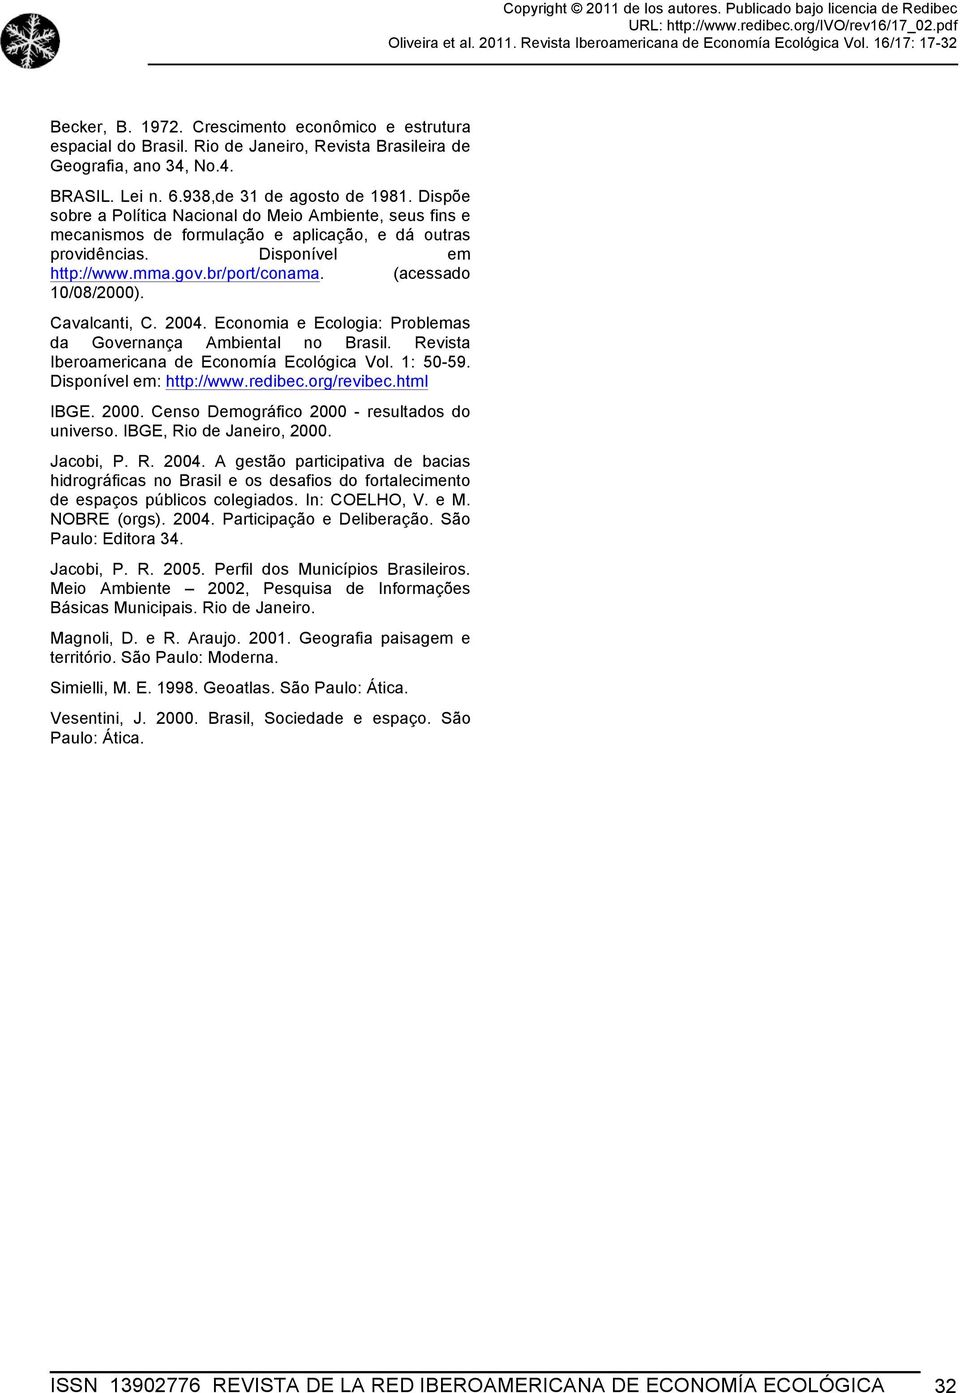 Cavalcanti, C. 2004. Economia e Ecologia: Problemas da Governança Ambiental no Brasil. Revista Iberoamericana de Economía Ecológica Vol. 1: 50-59. Disponível em: http://www.redibec.org/revibec.